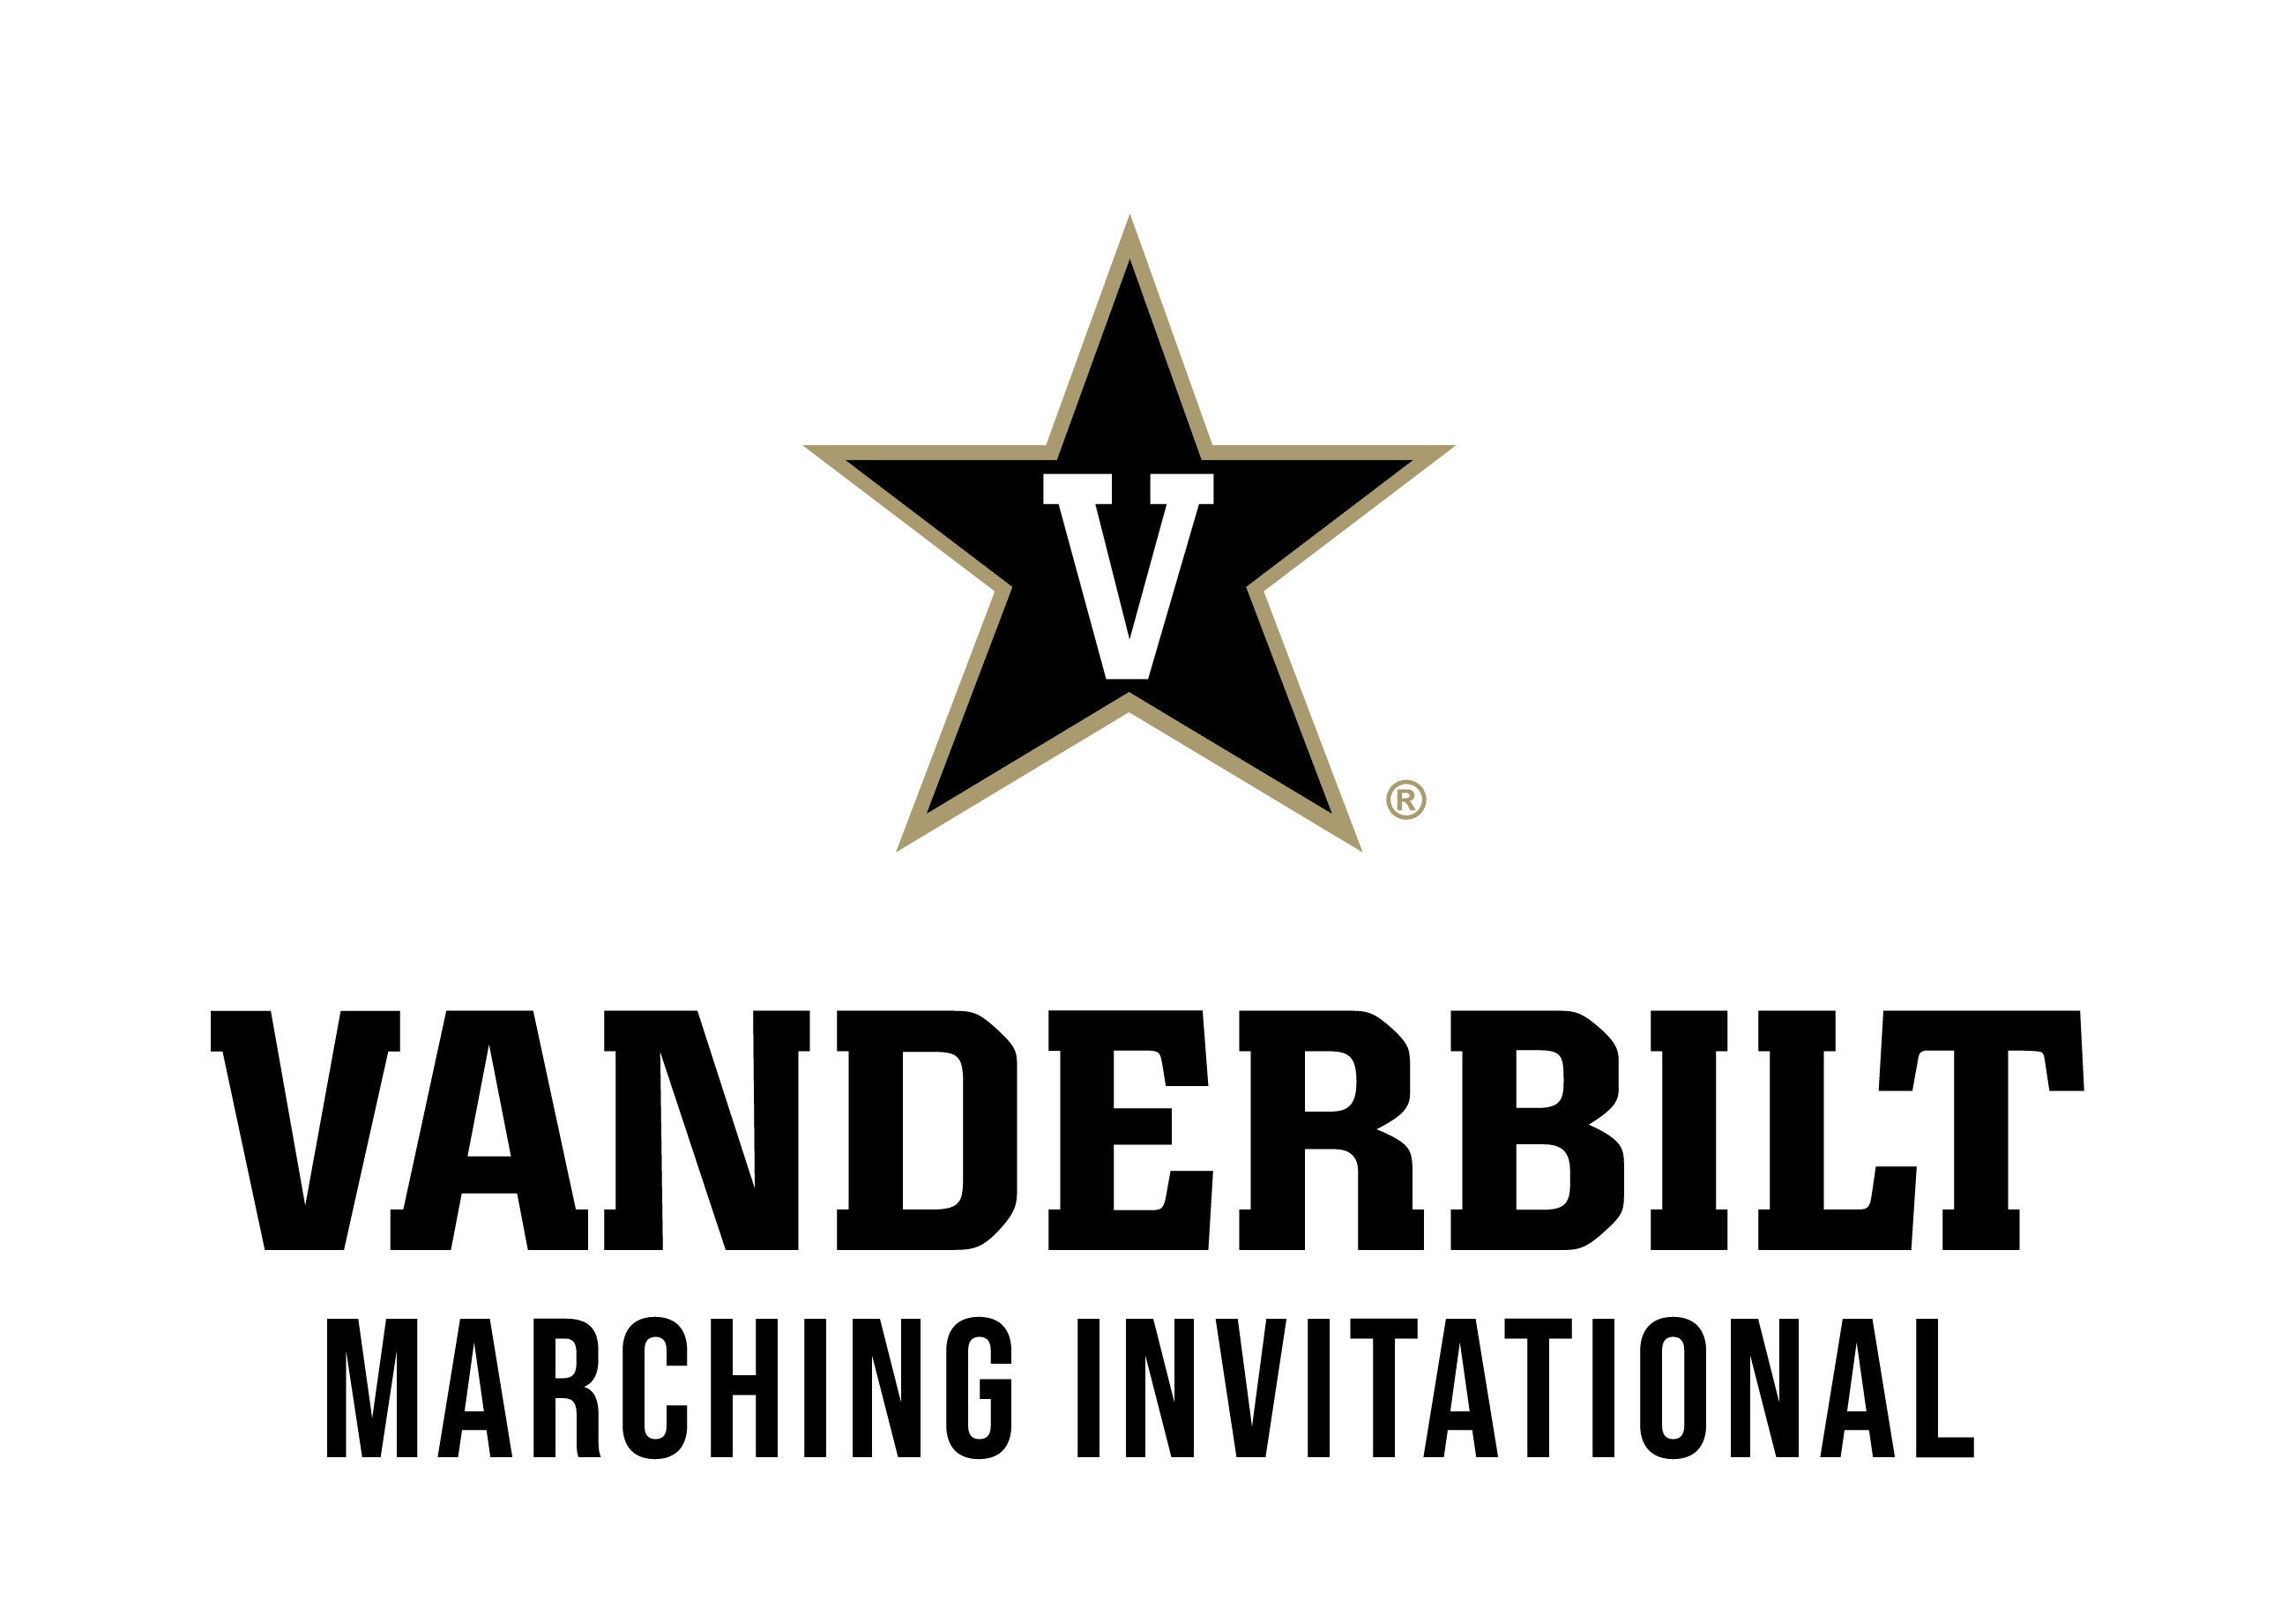 VMI Logo - Vanderbilt Marching Invitational | Vanderbilt University Bands ...